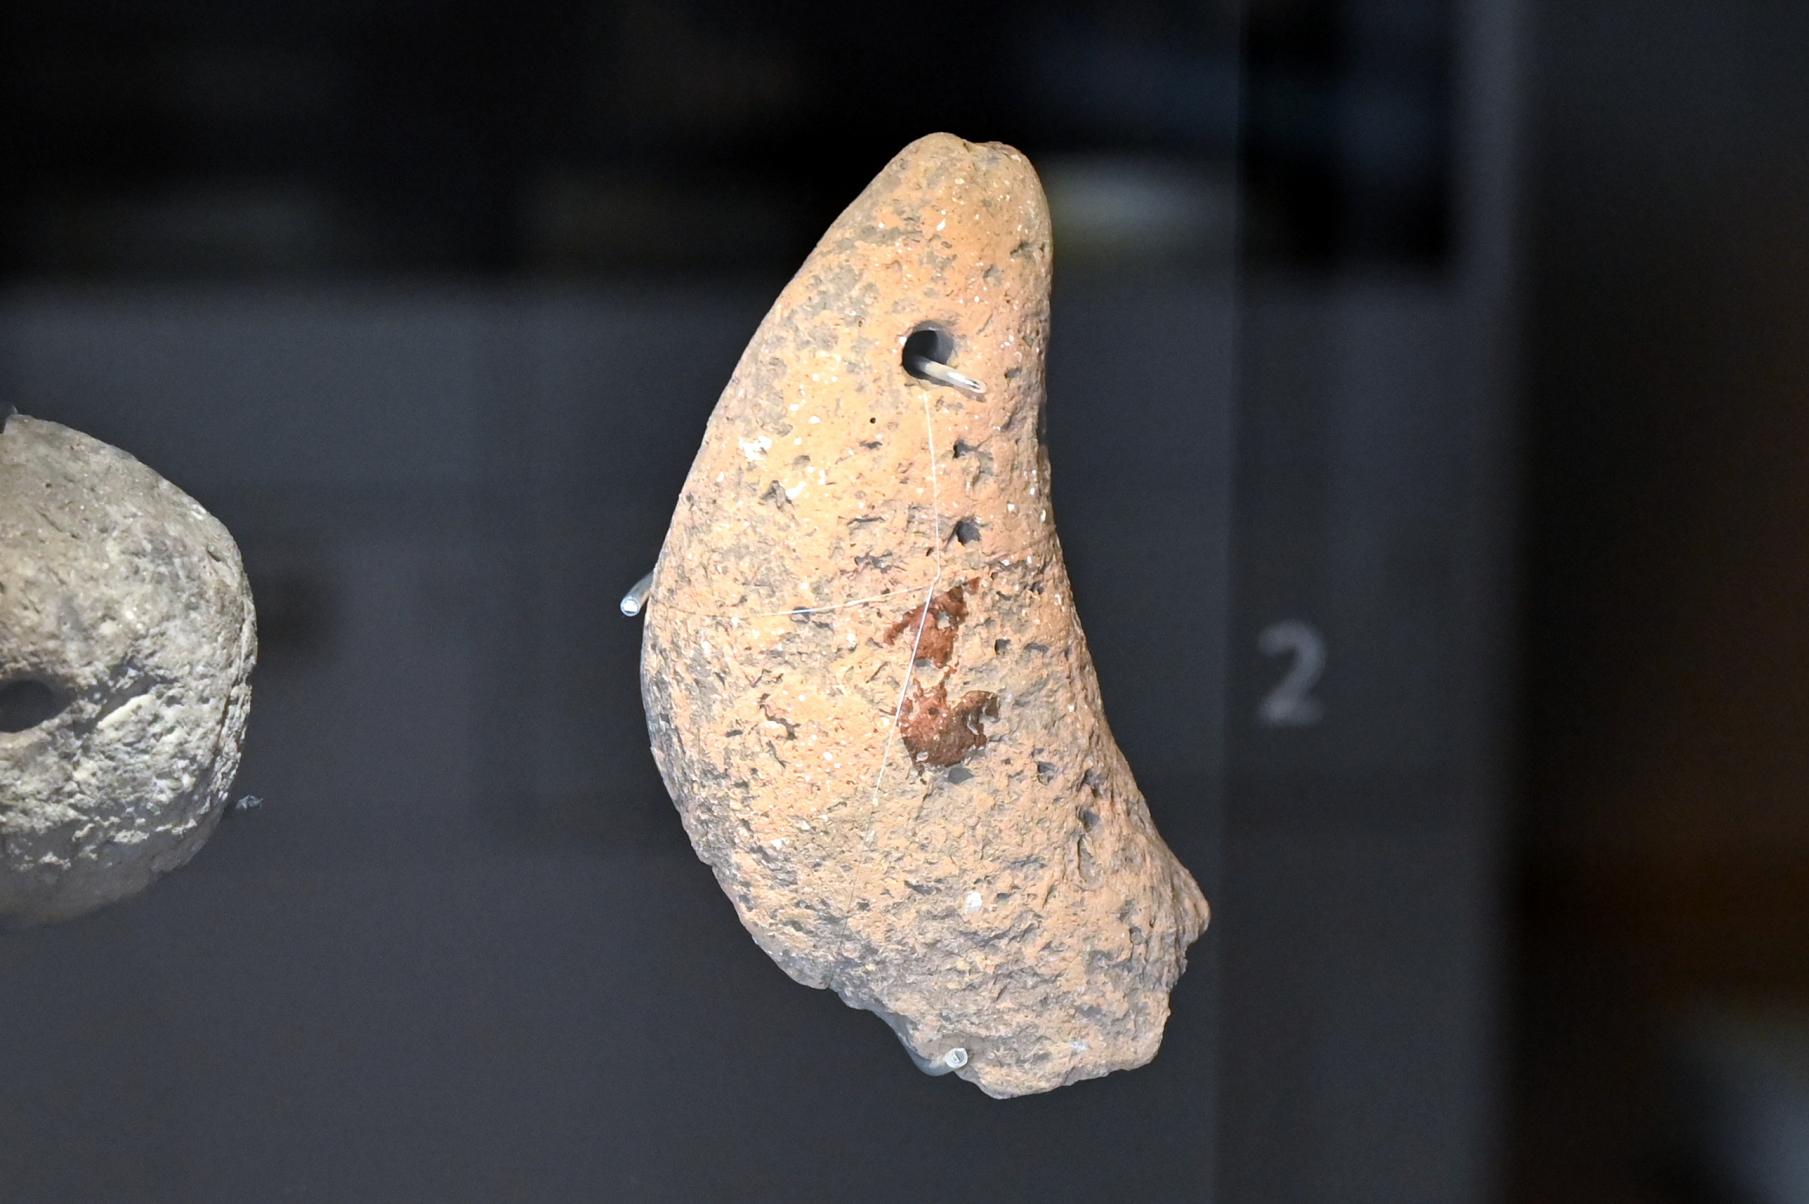 Nierenförmiges Webgewicht, Neolithikum (Jungsteinzeit), 5500 - 1700 v. Chr.